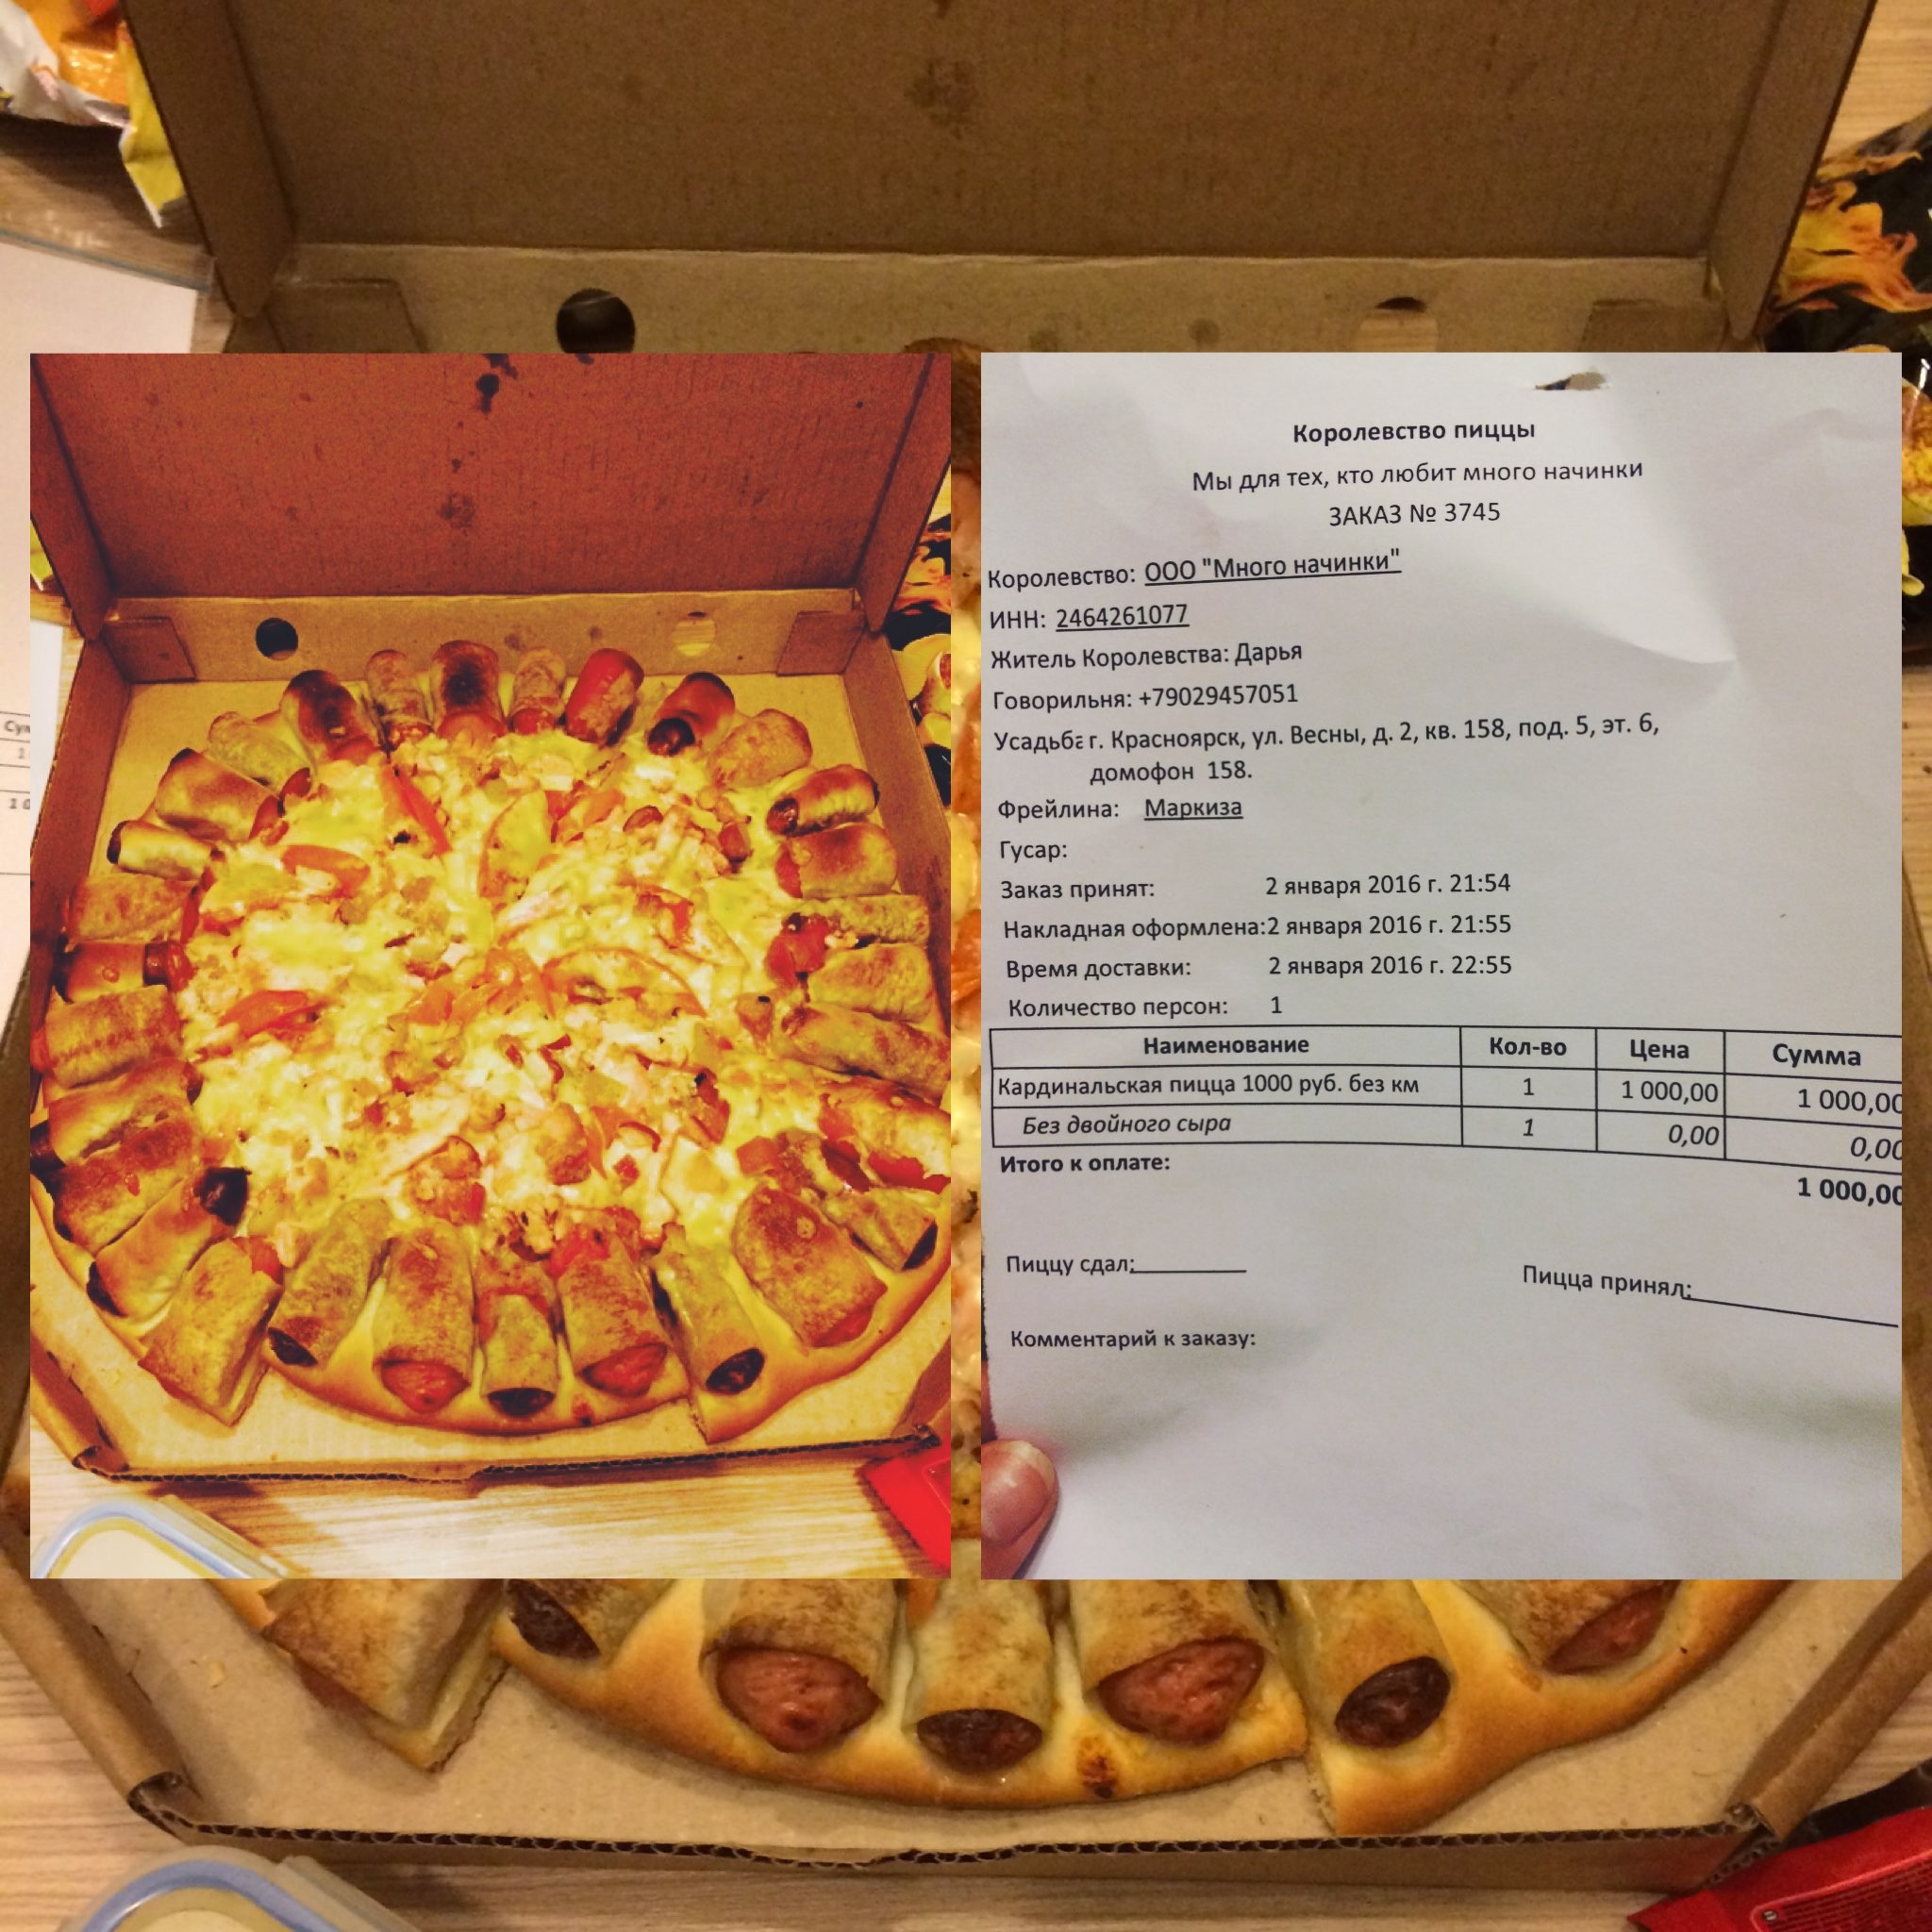 лучшая пицца в красноярске с доставкой рейтинг фото 85